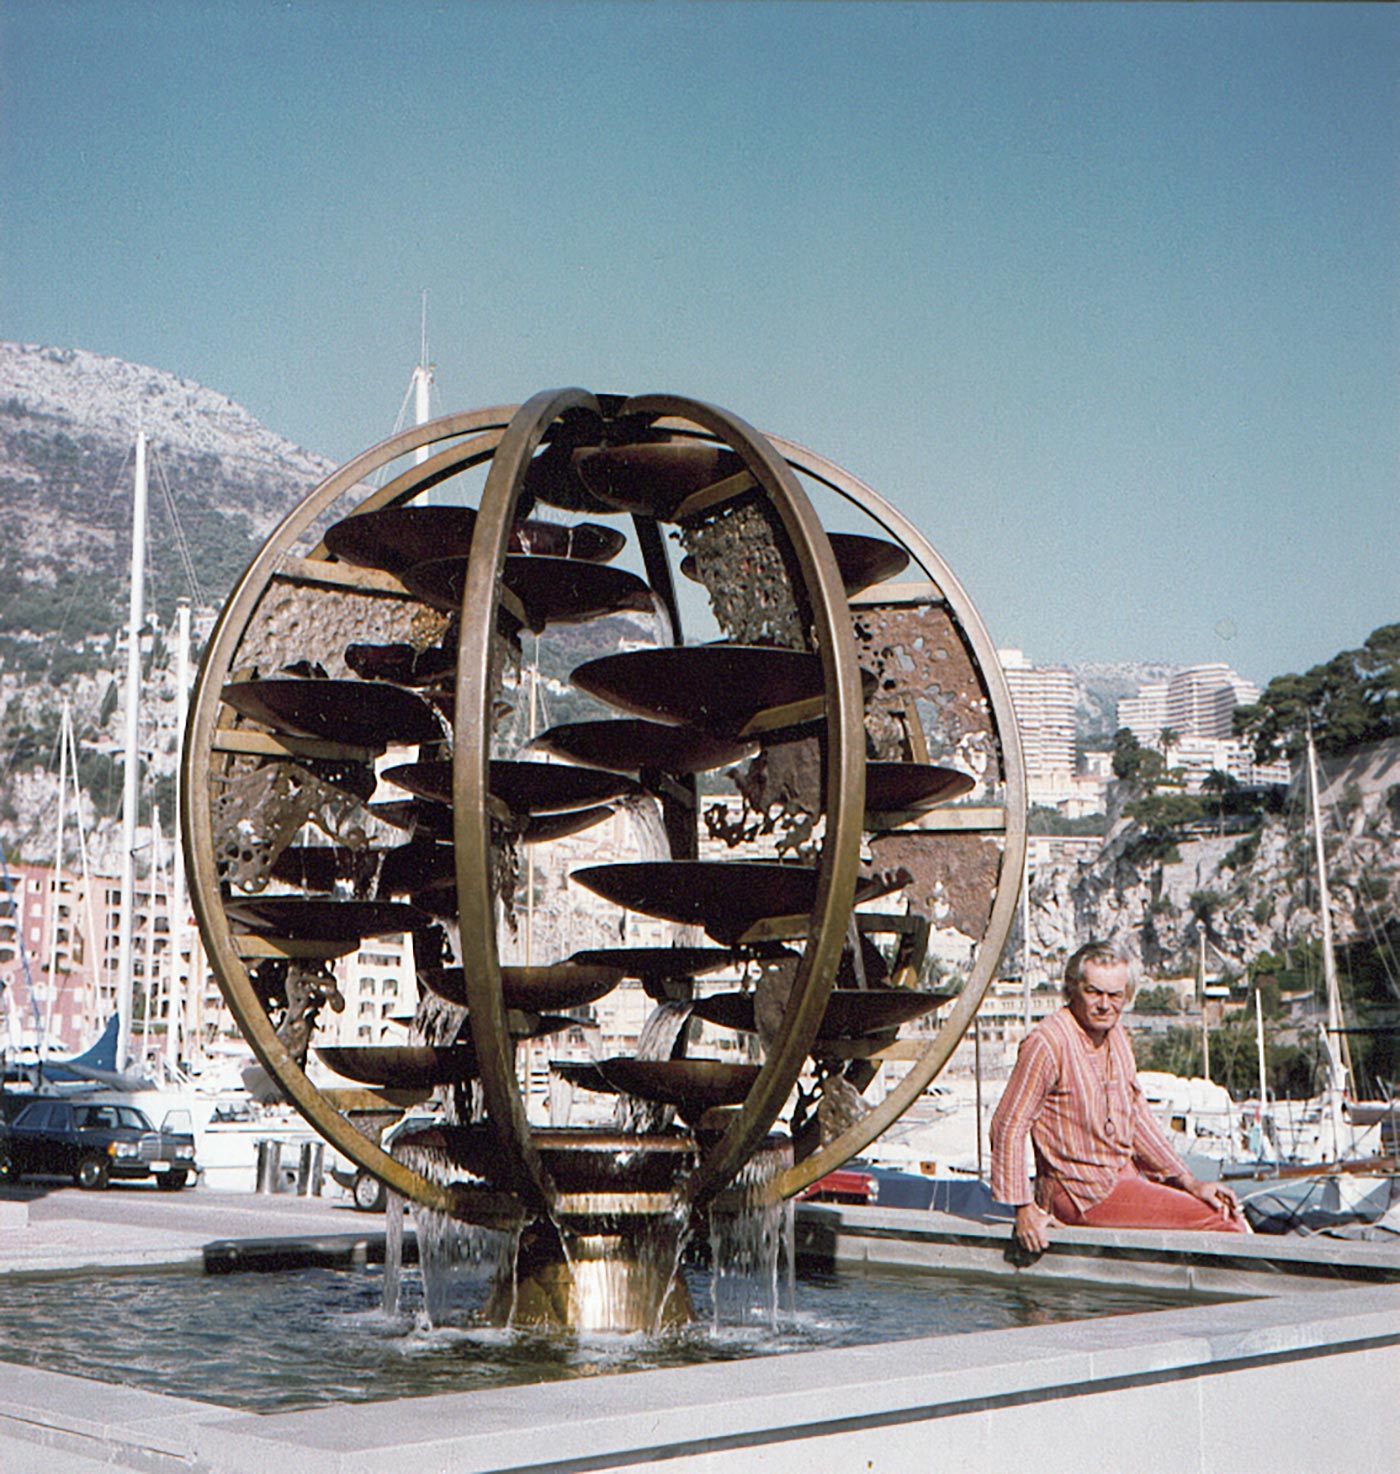 Sculpture fontaine Fontvieille Monaco - La sphère creuse 1986 - Guy Lartigue